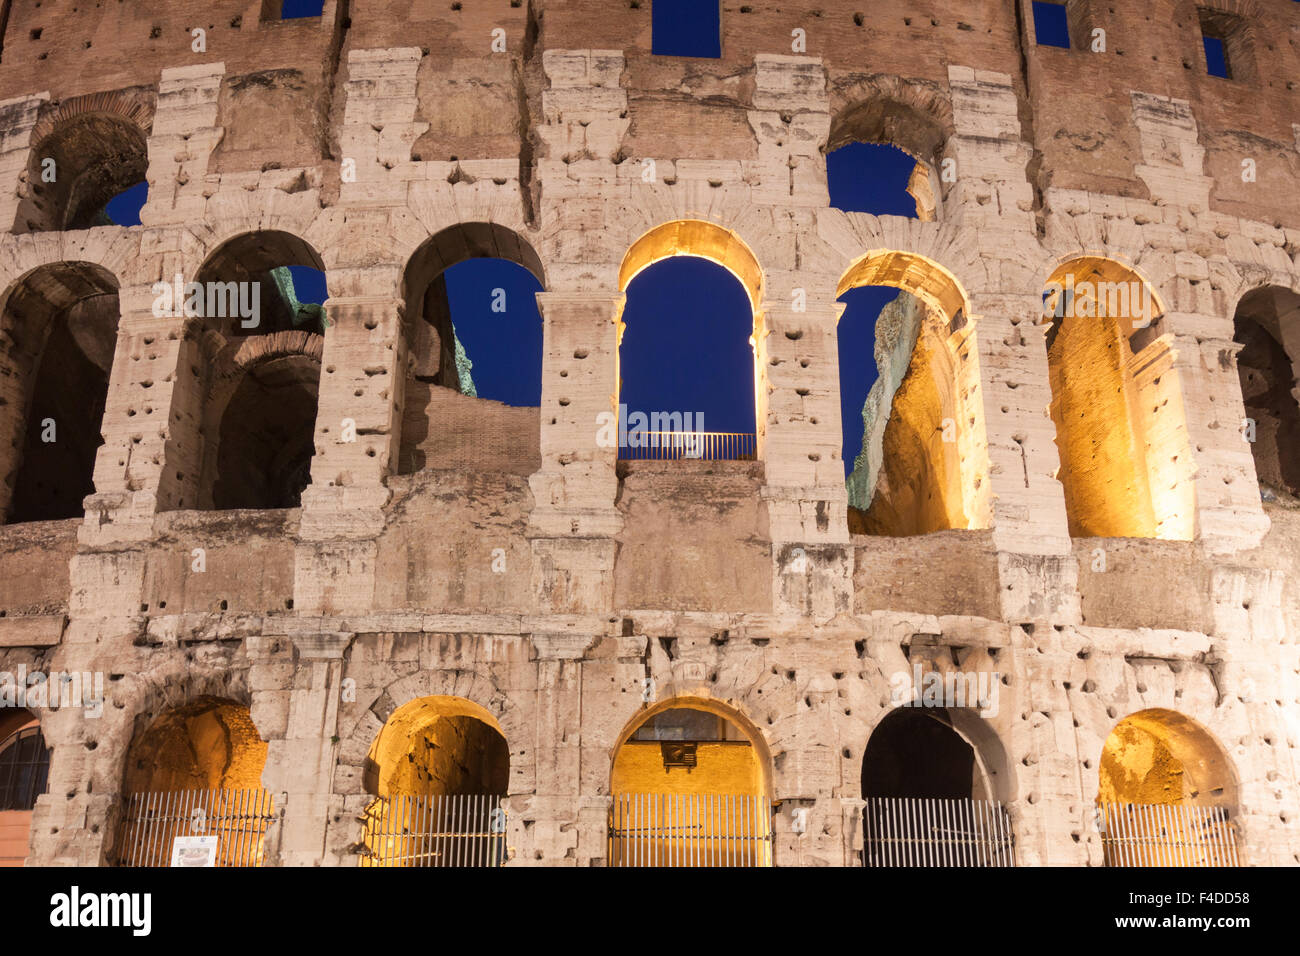 Dettaglio delle arcate illuminato del Colosseo al tramonto. Roma, Italia Foto Stock